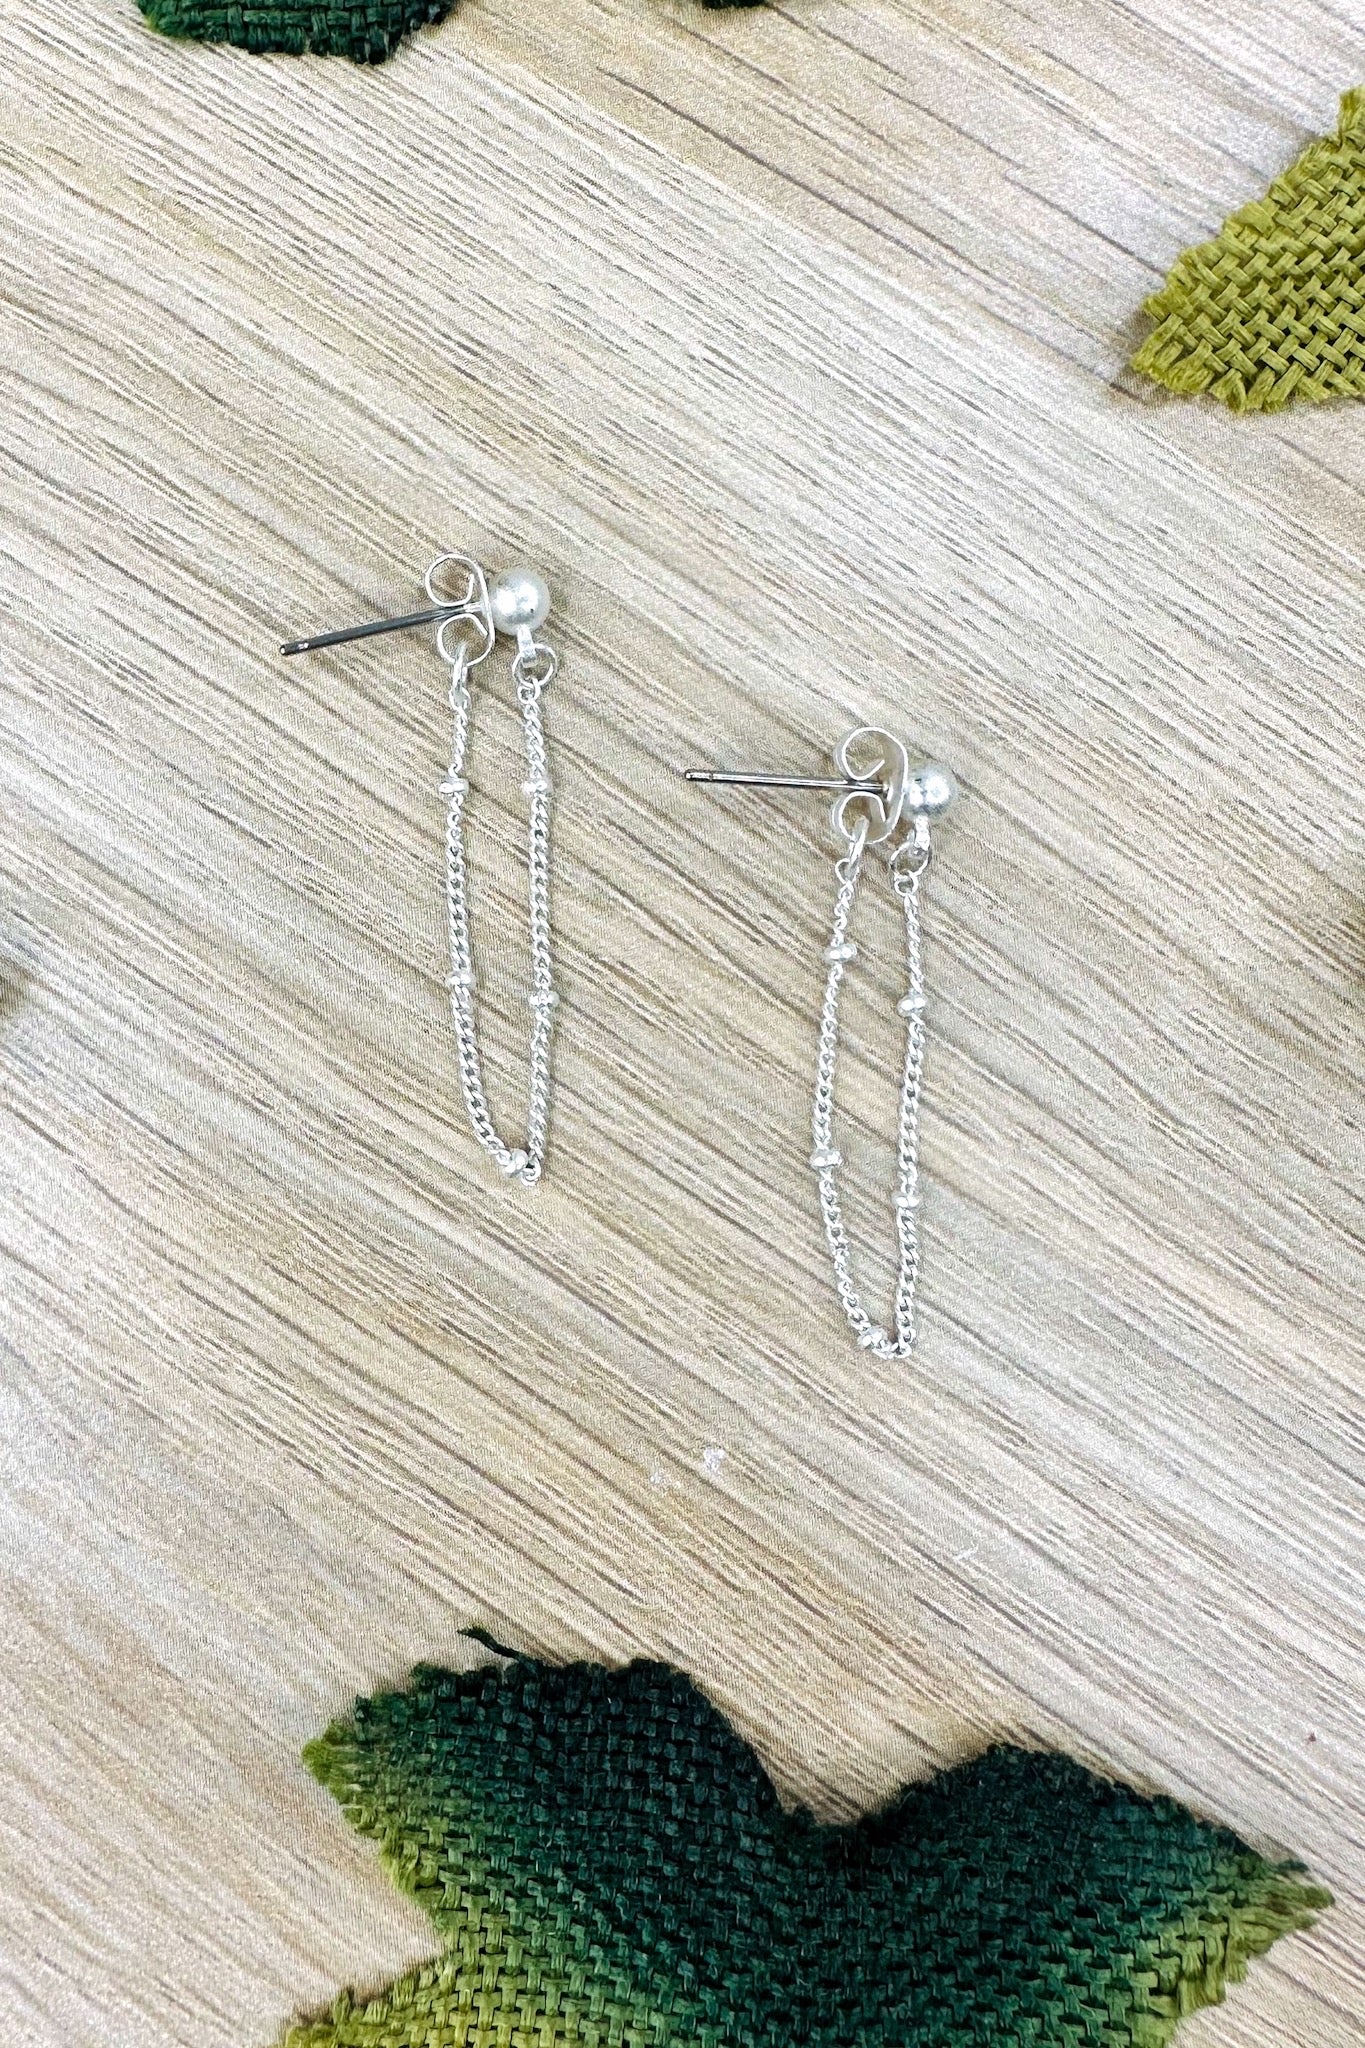 Drop Chain Mason Ball Stud Earrings in Silver